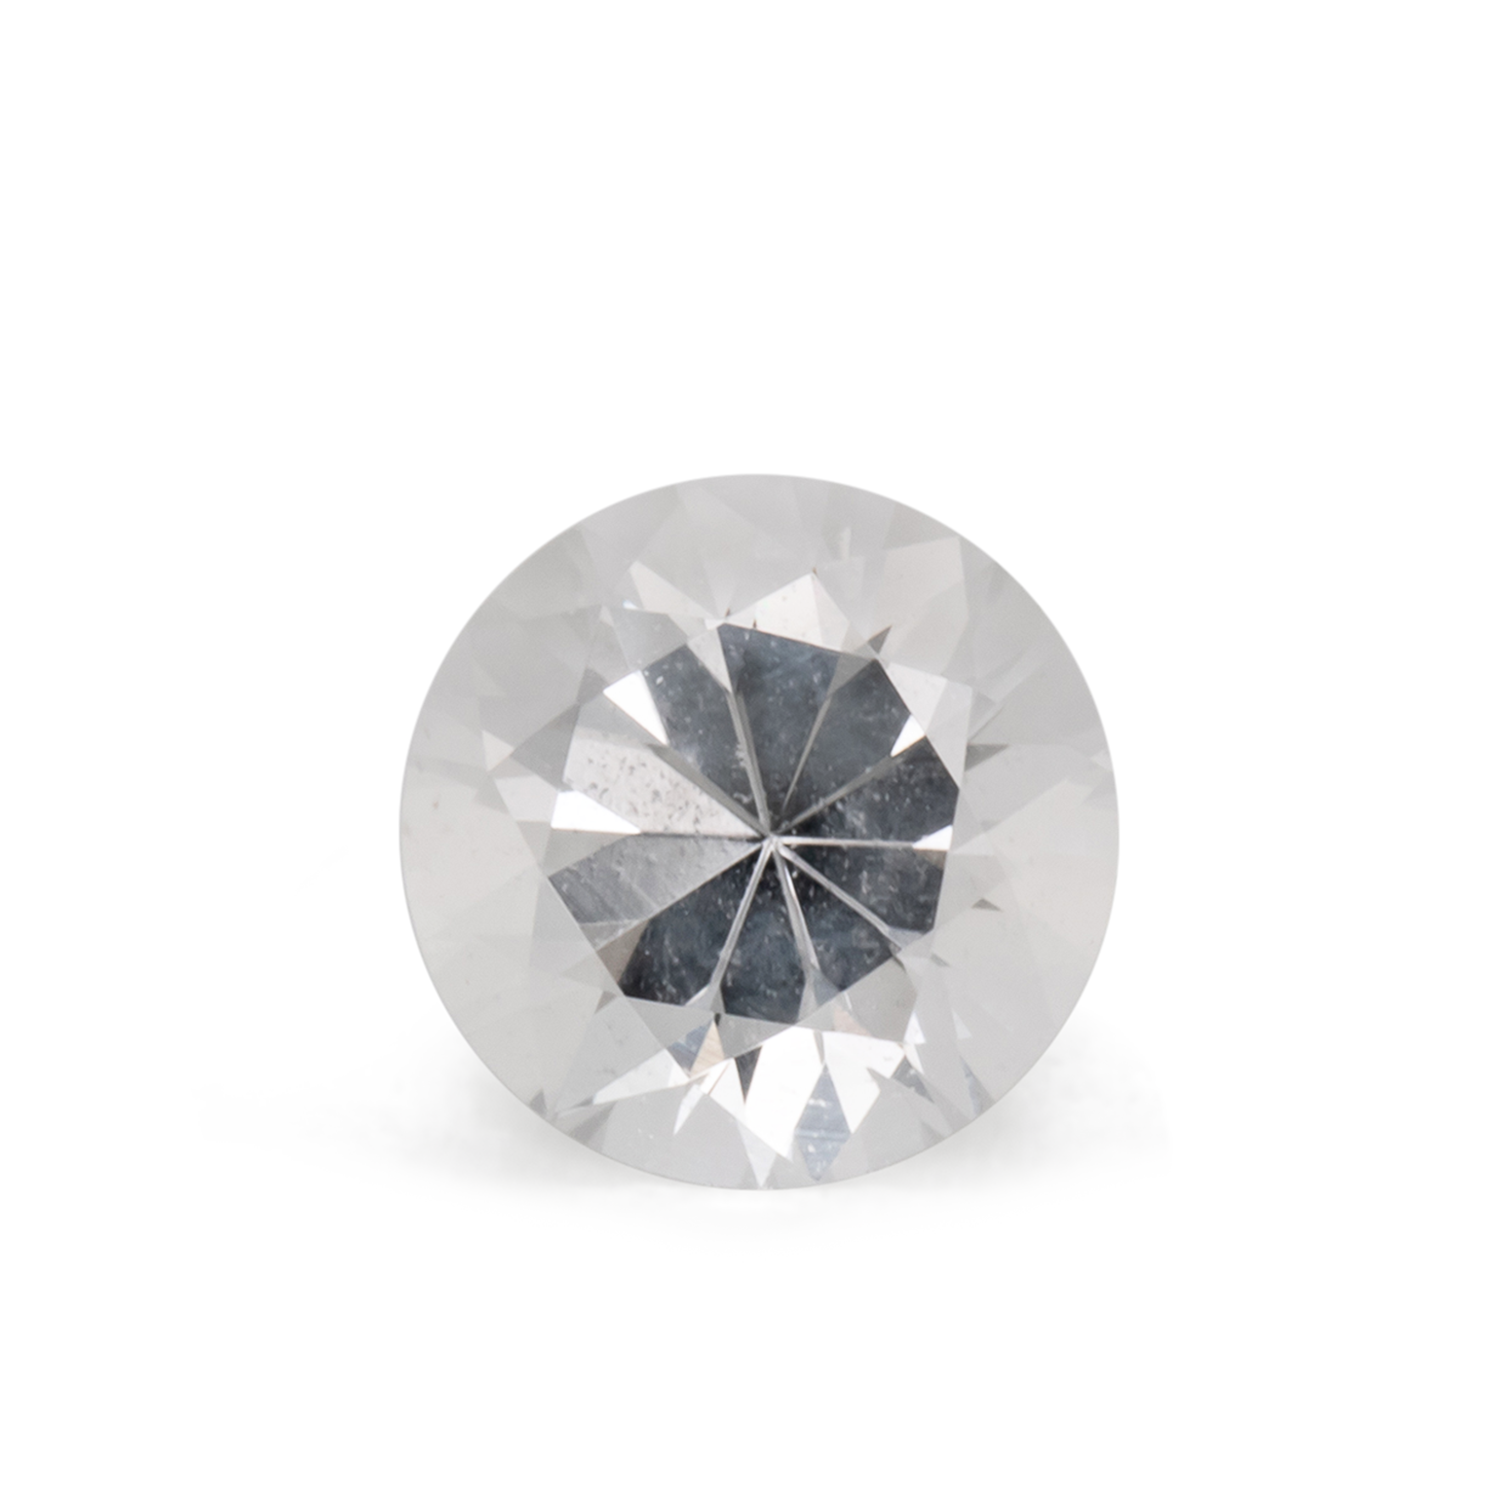 Beryll - weiß, rund, 6.1x6.1 mm, 0.74 cts, Nr. BY90089